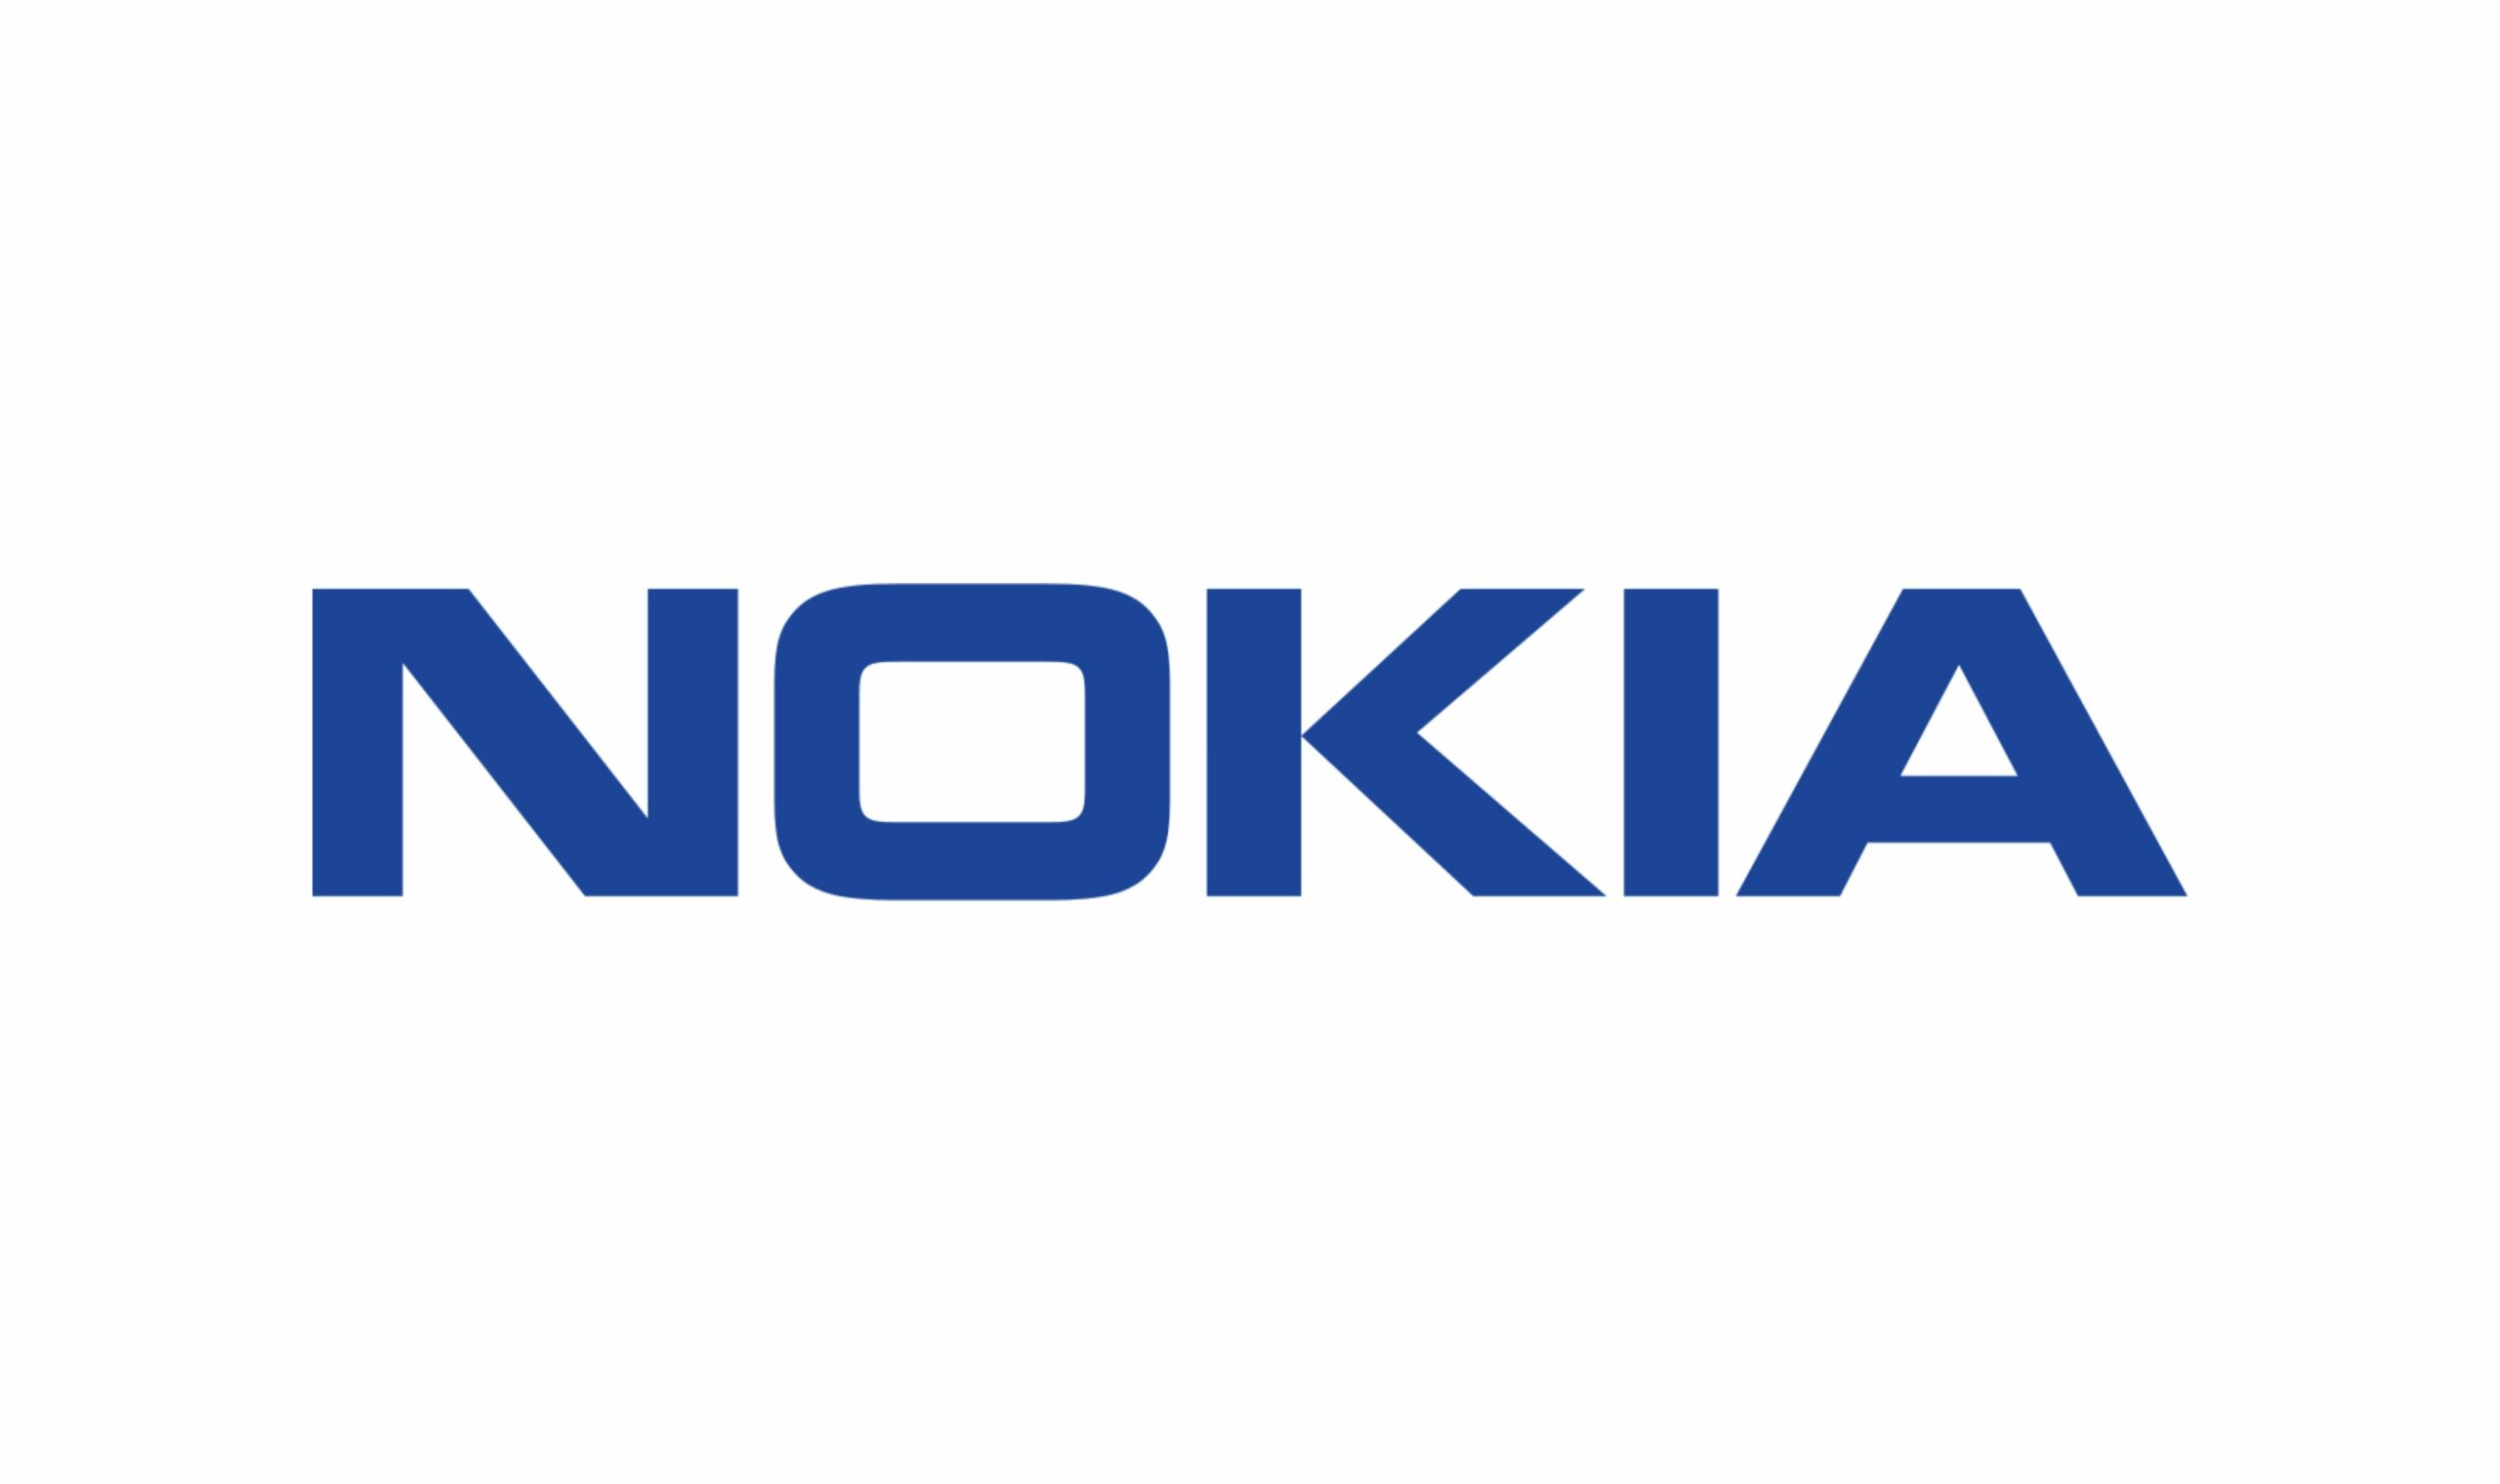 Nokia Moko E Whakaatuhia Ana